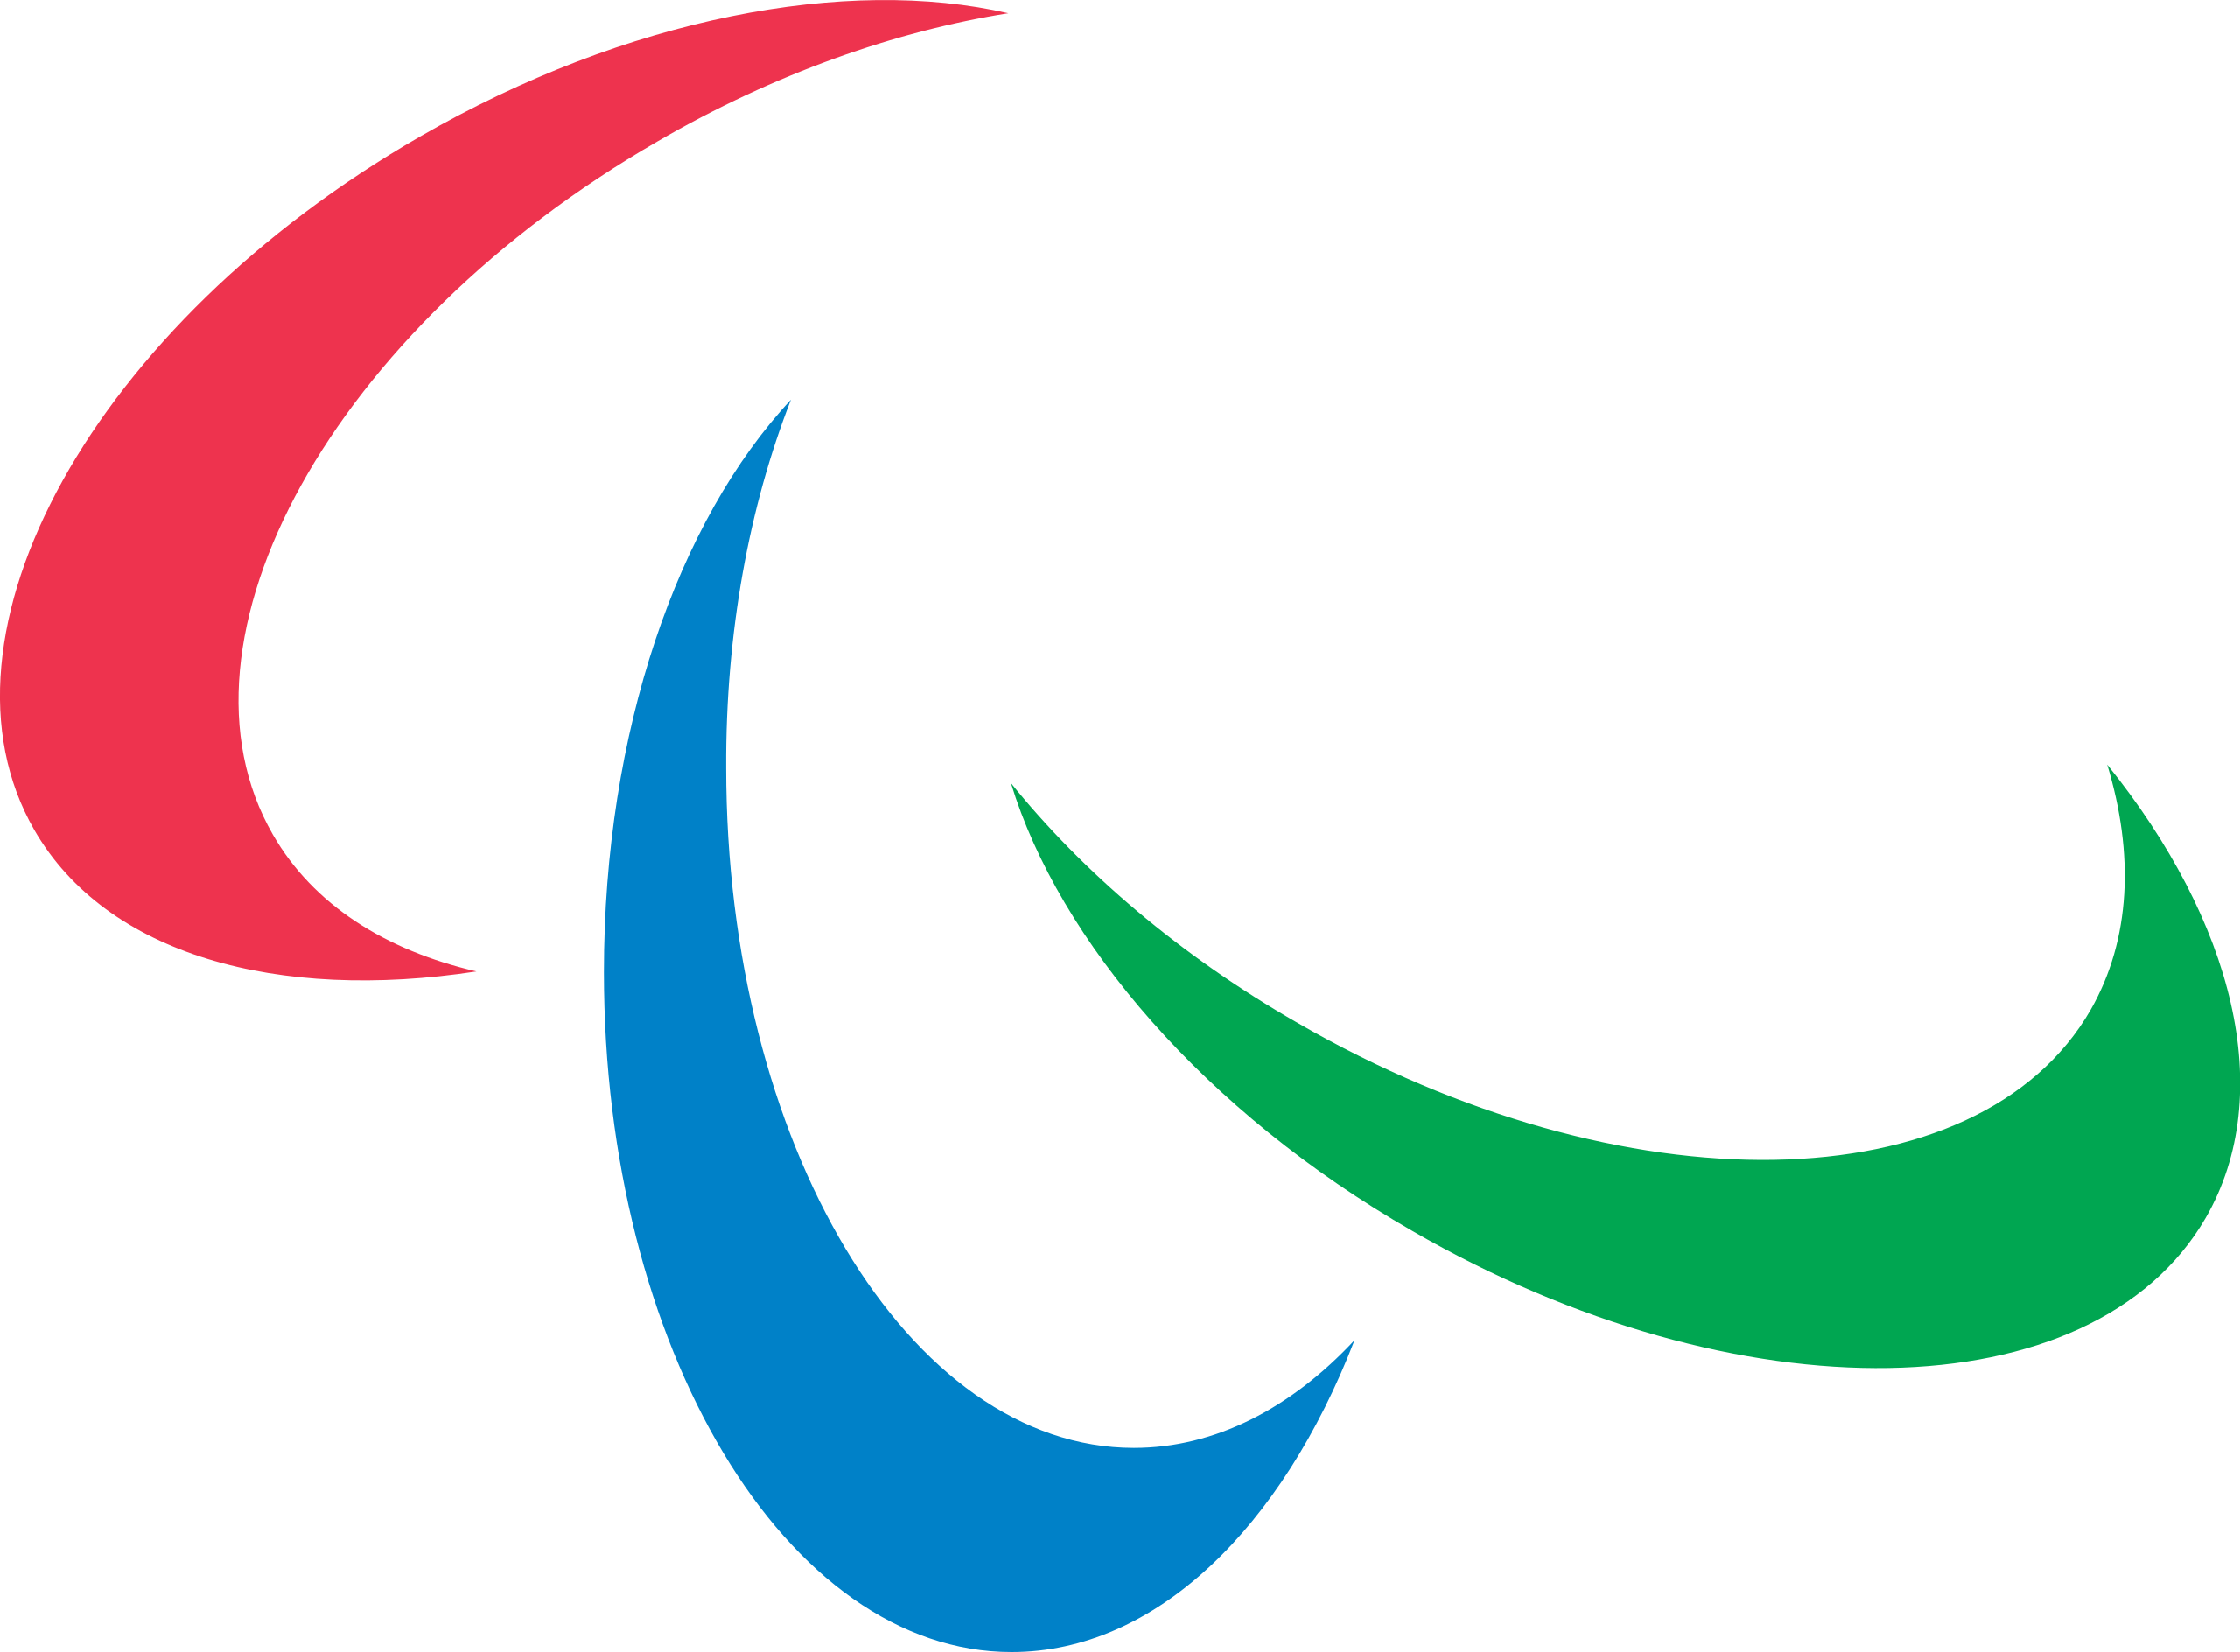 МОК - Паралимпиада - Паралимпийские игры - Параолимпийские игры - Paralympic Games